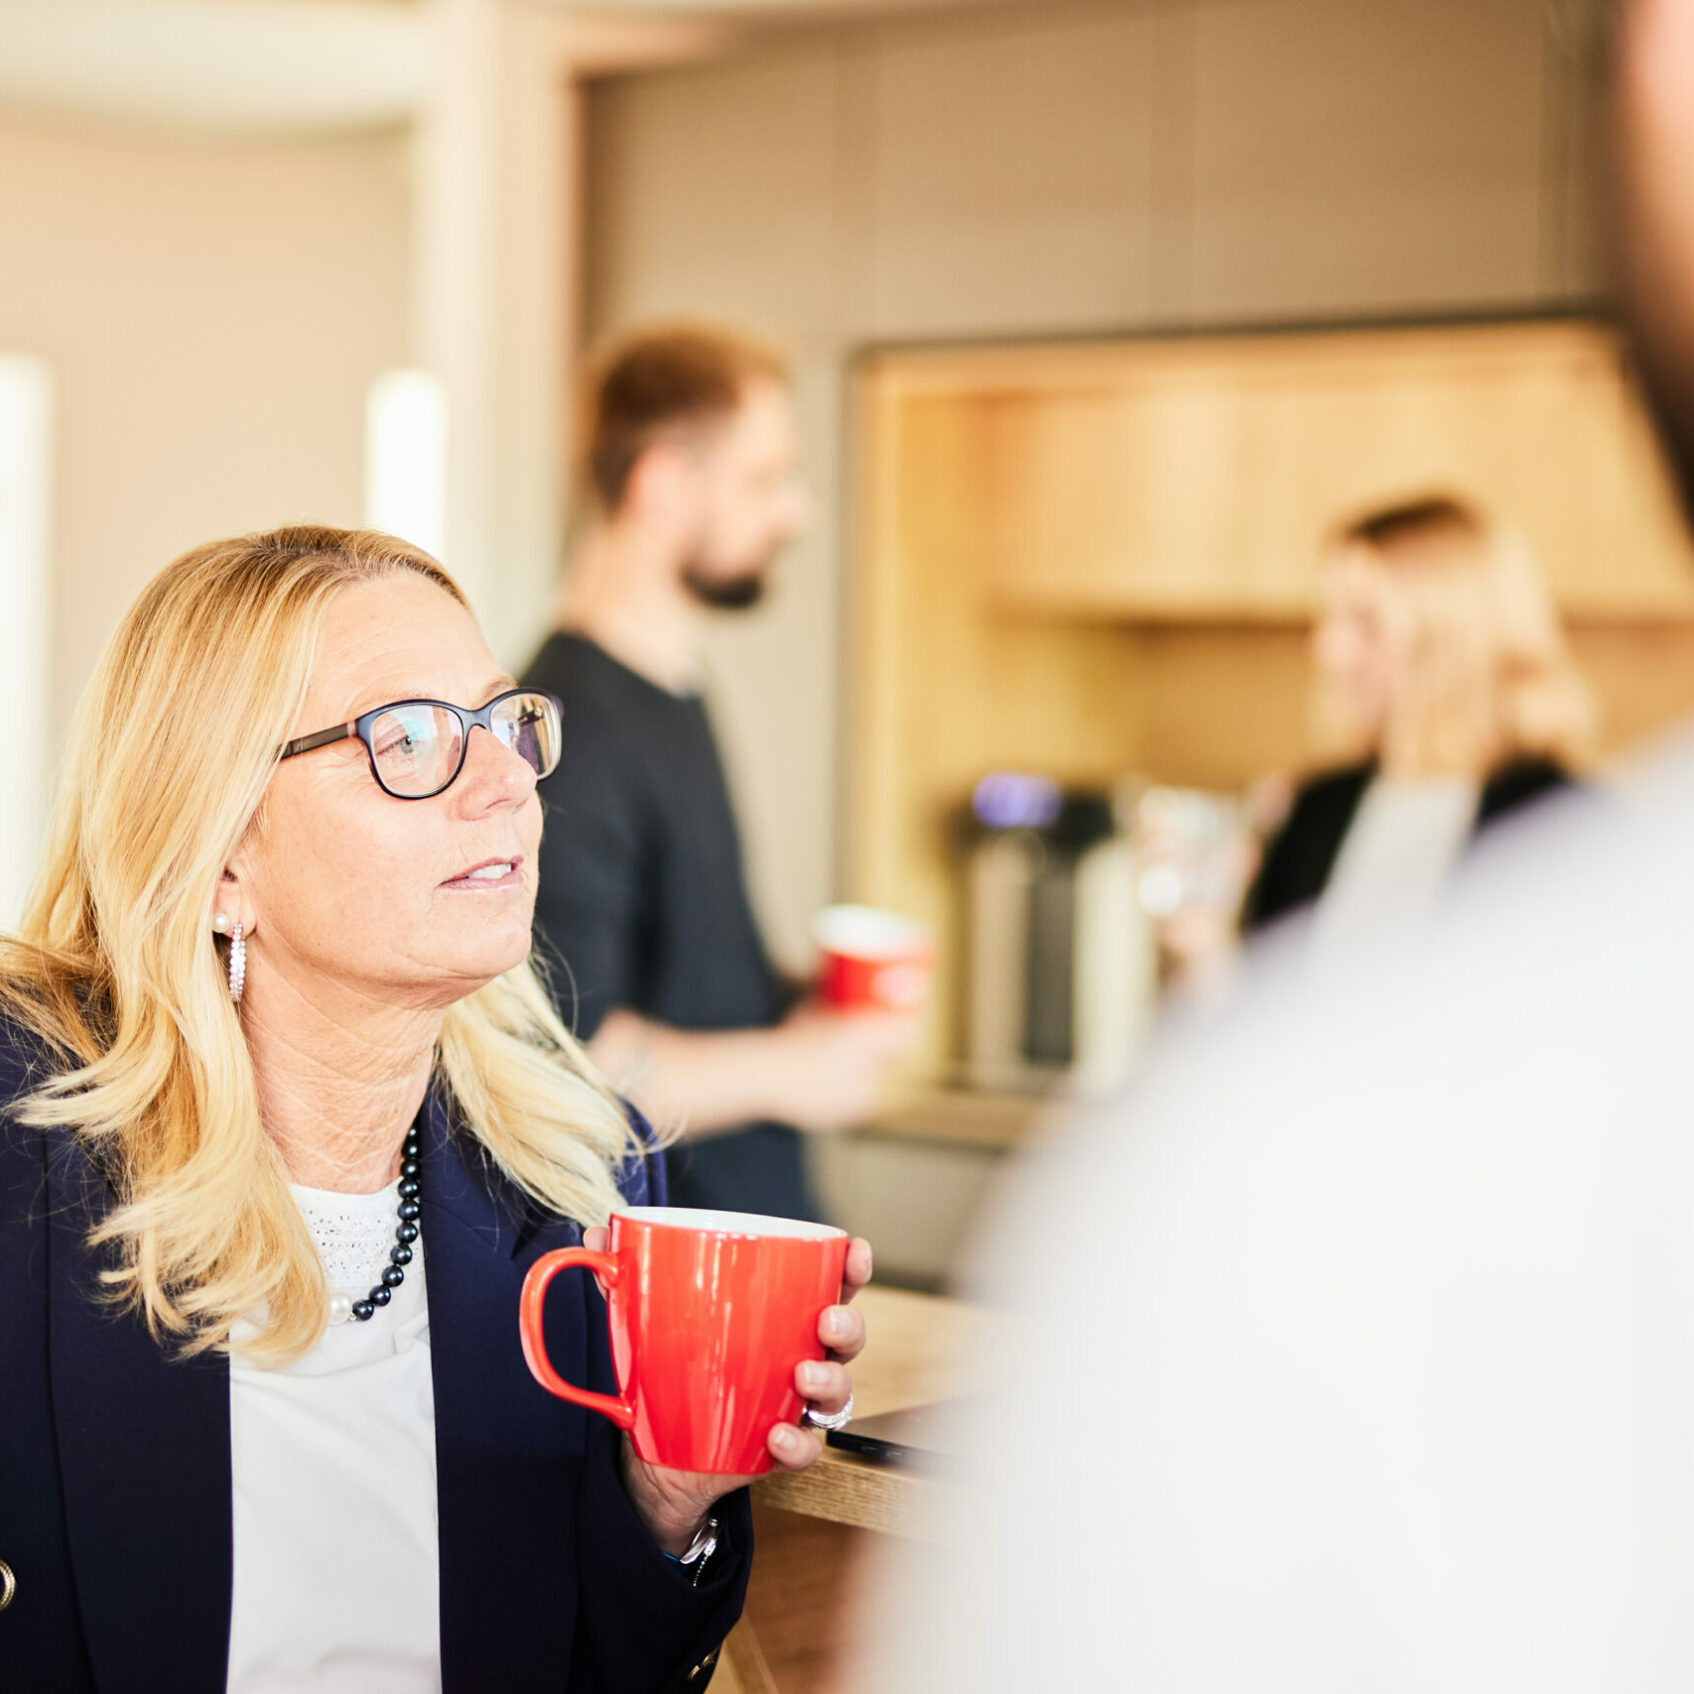 Foto von einer blonden Frau mittleren Alters, die mit einer valantic-Tasse mit ihren Kolleg*innen an der Kaffeebar ein Gespräch führt.